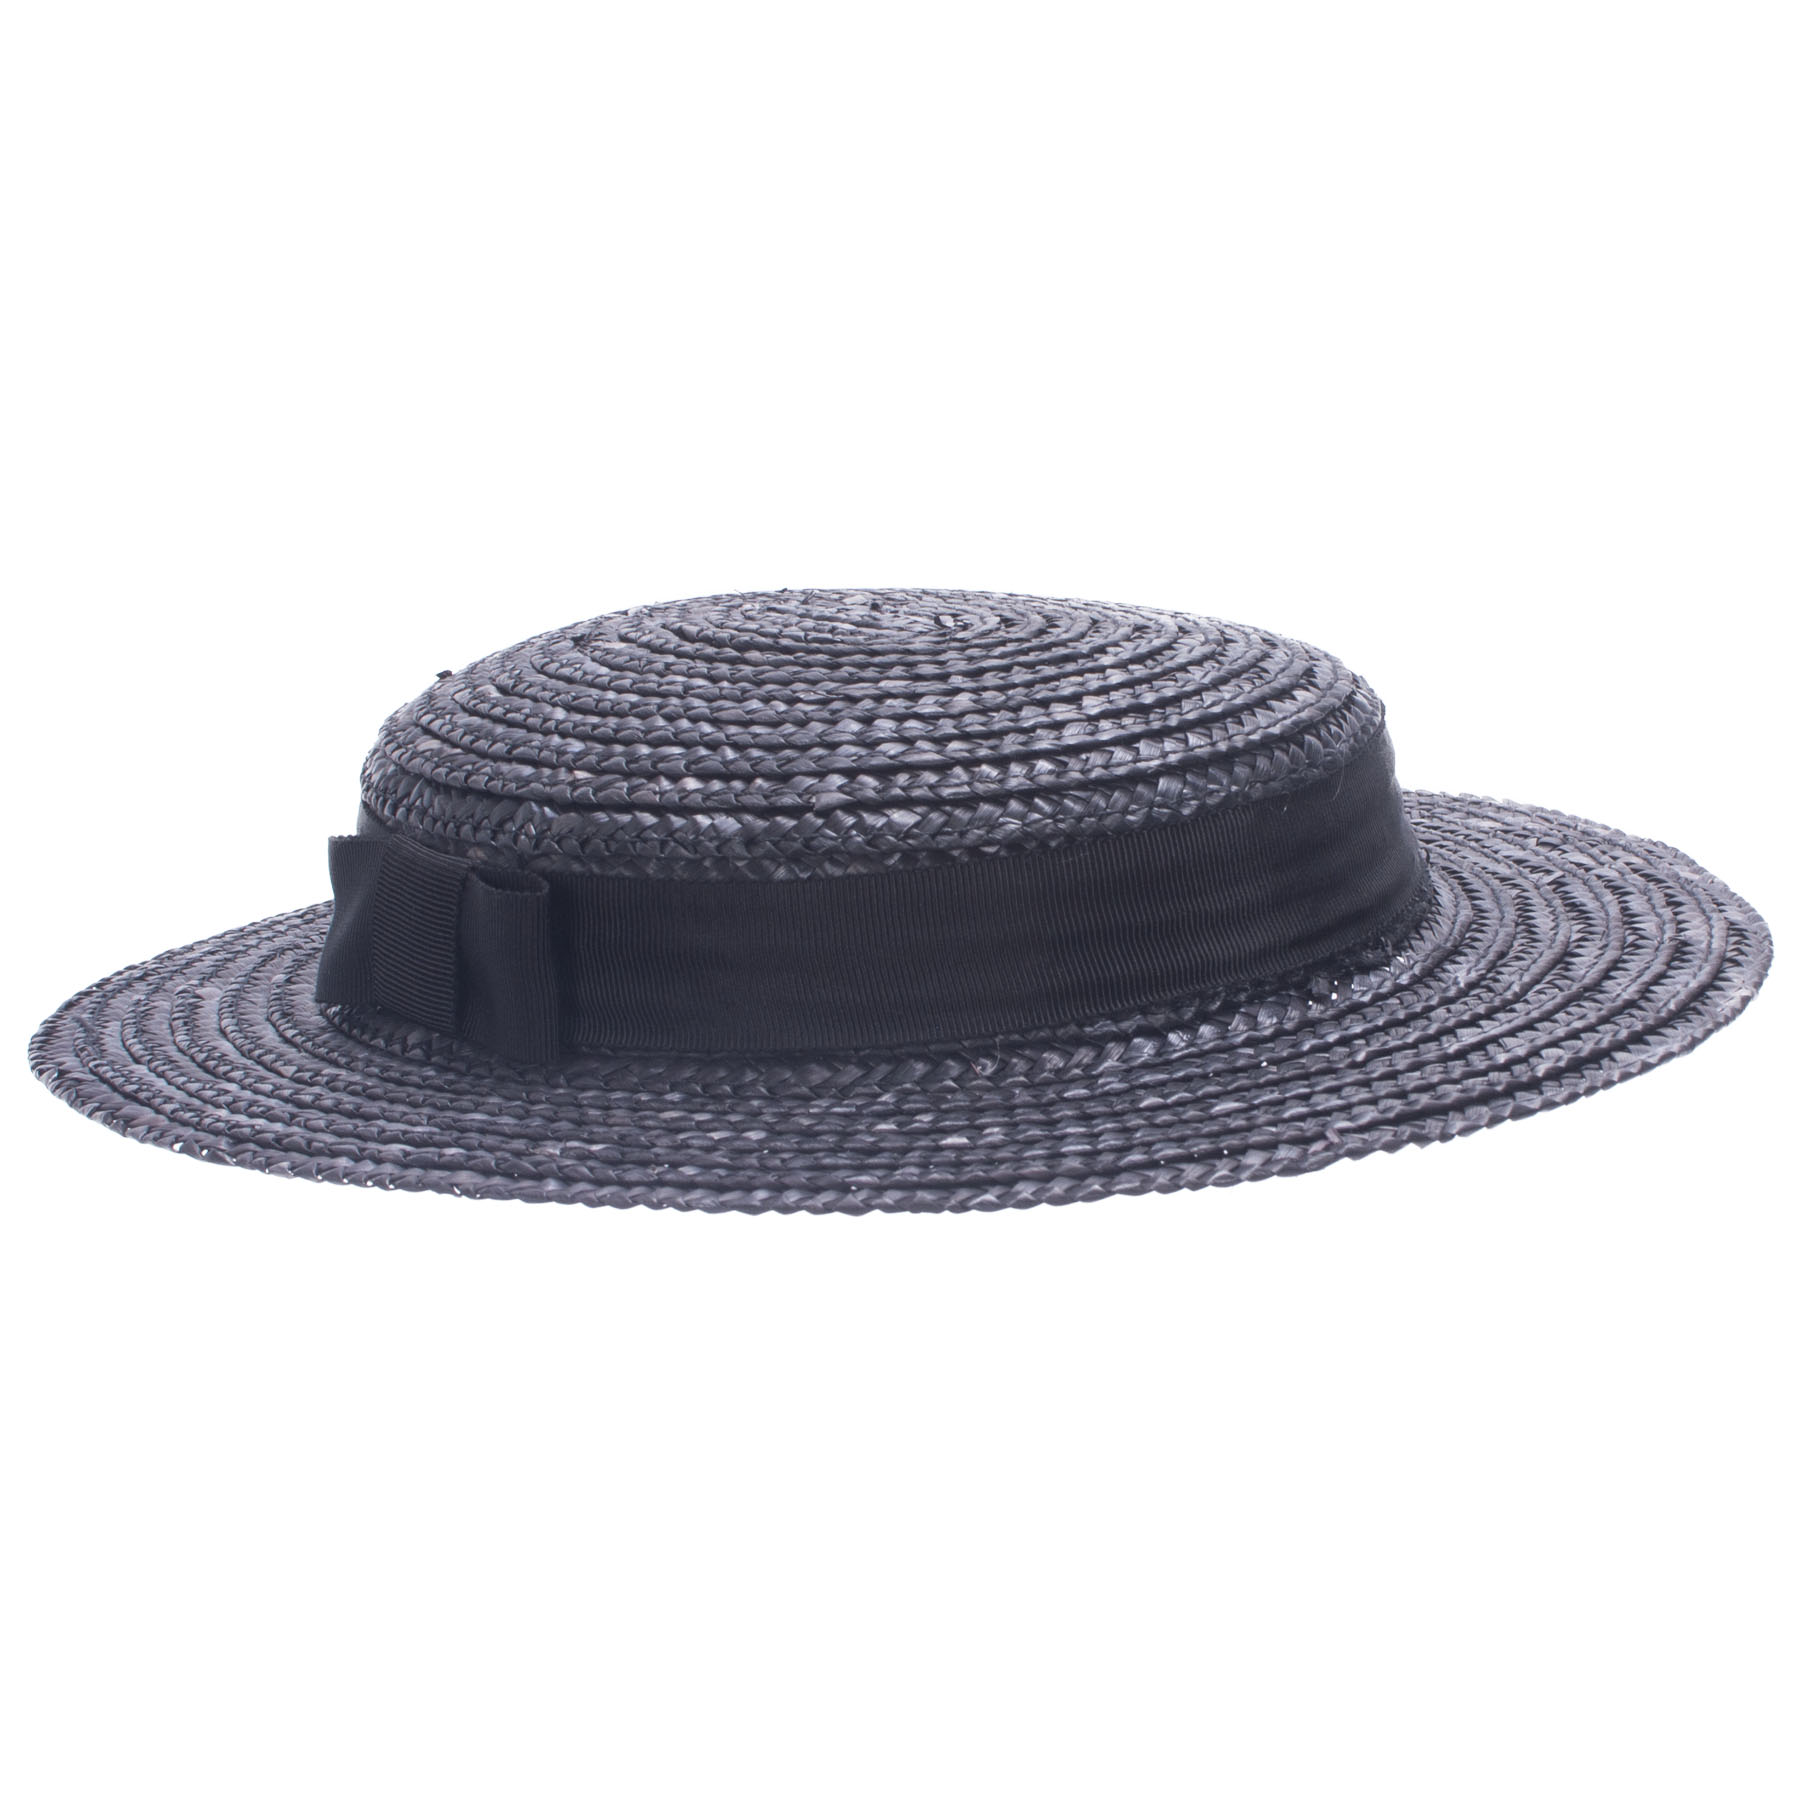 Lawliet Mini Top Hat Black Hatband Disc affascinatore Tea Party Decor personalizzato A617